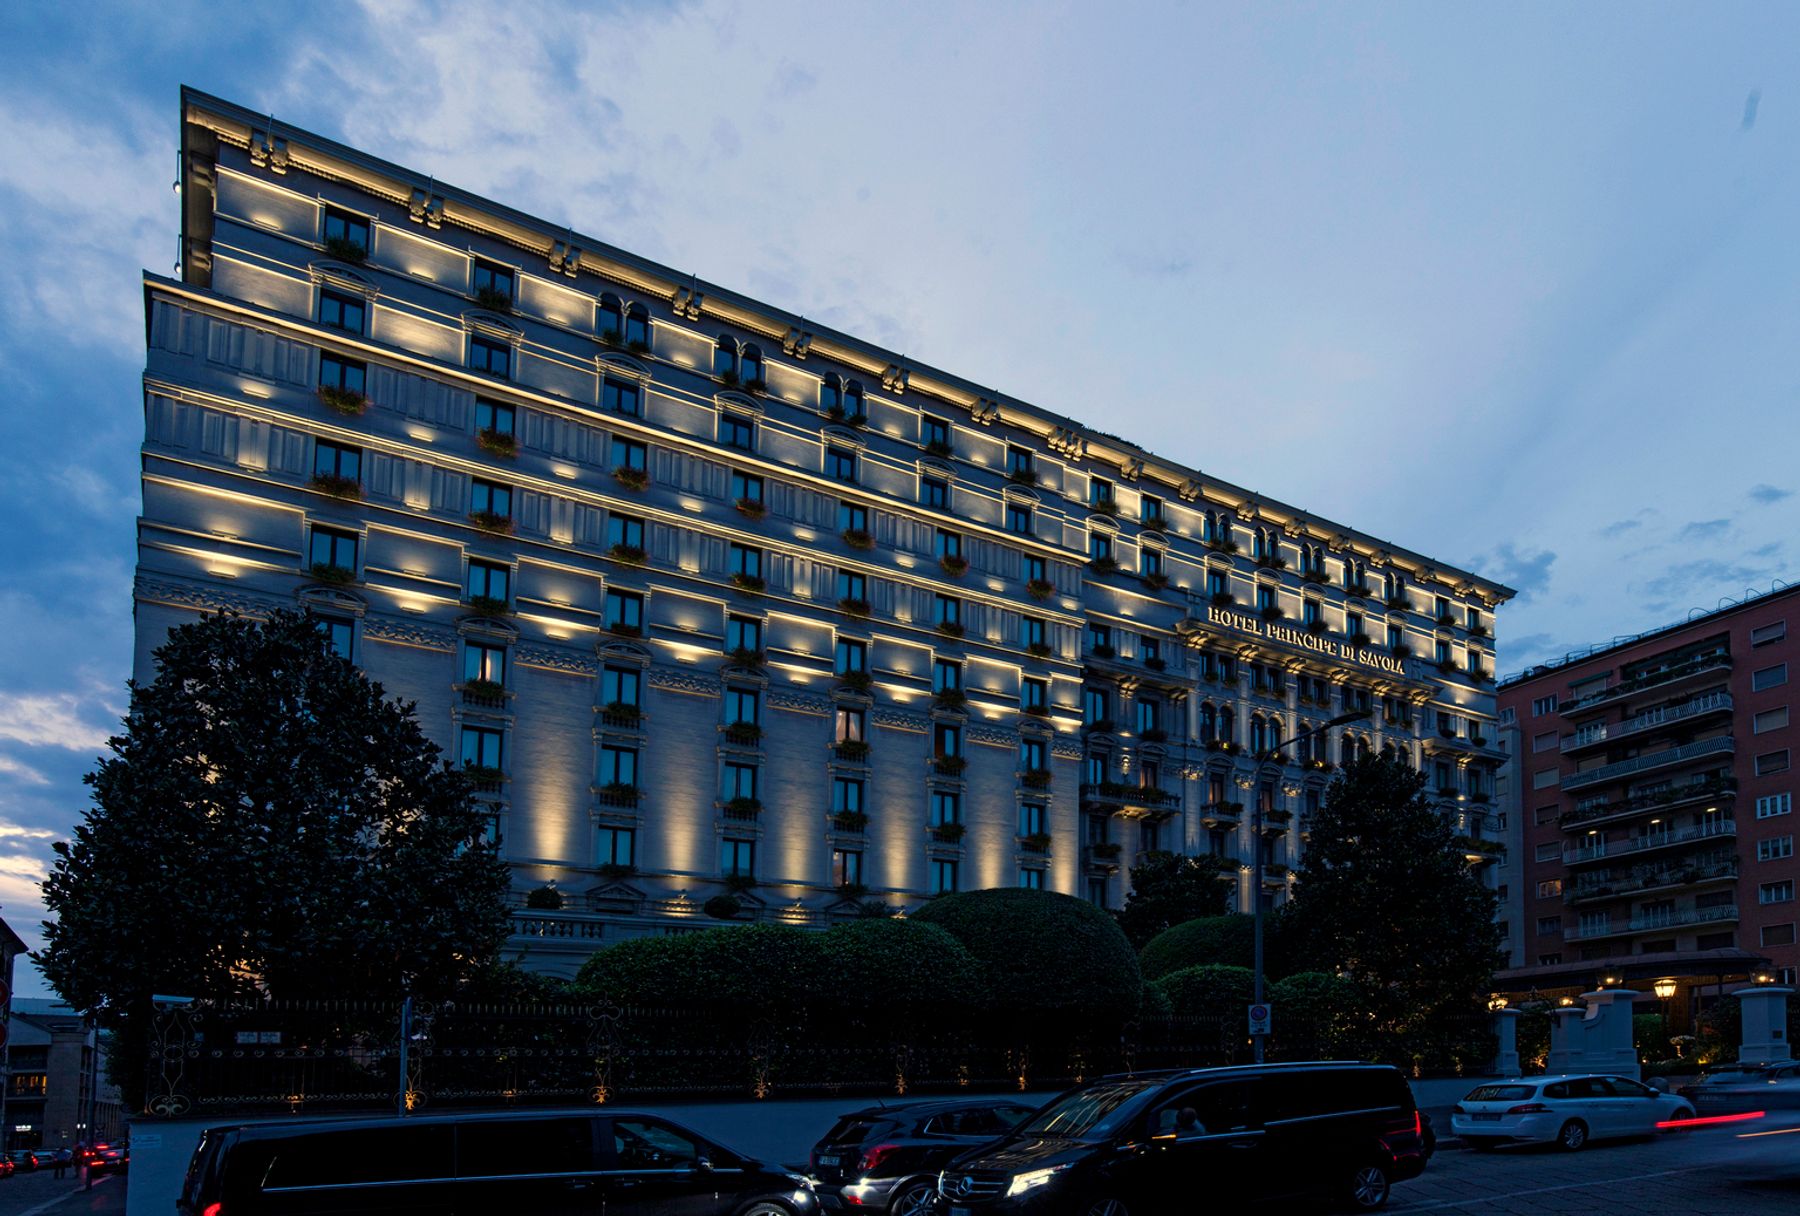 Hotel Principe di Savoia, Milano. Architettura: Cesare Tenca. Progettazione illuminotecnica: Marco Nereo Rotelli, Milano. Fotografia: Dirk Vogel, Altena.